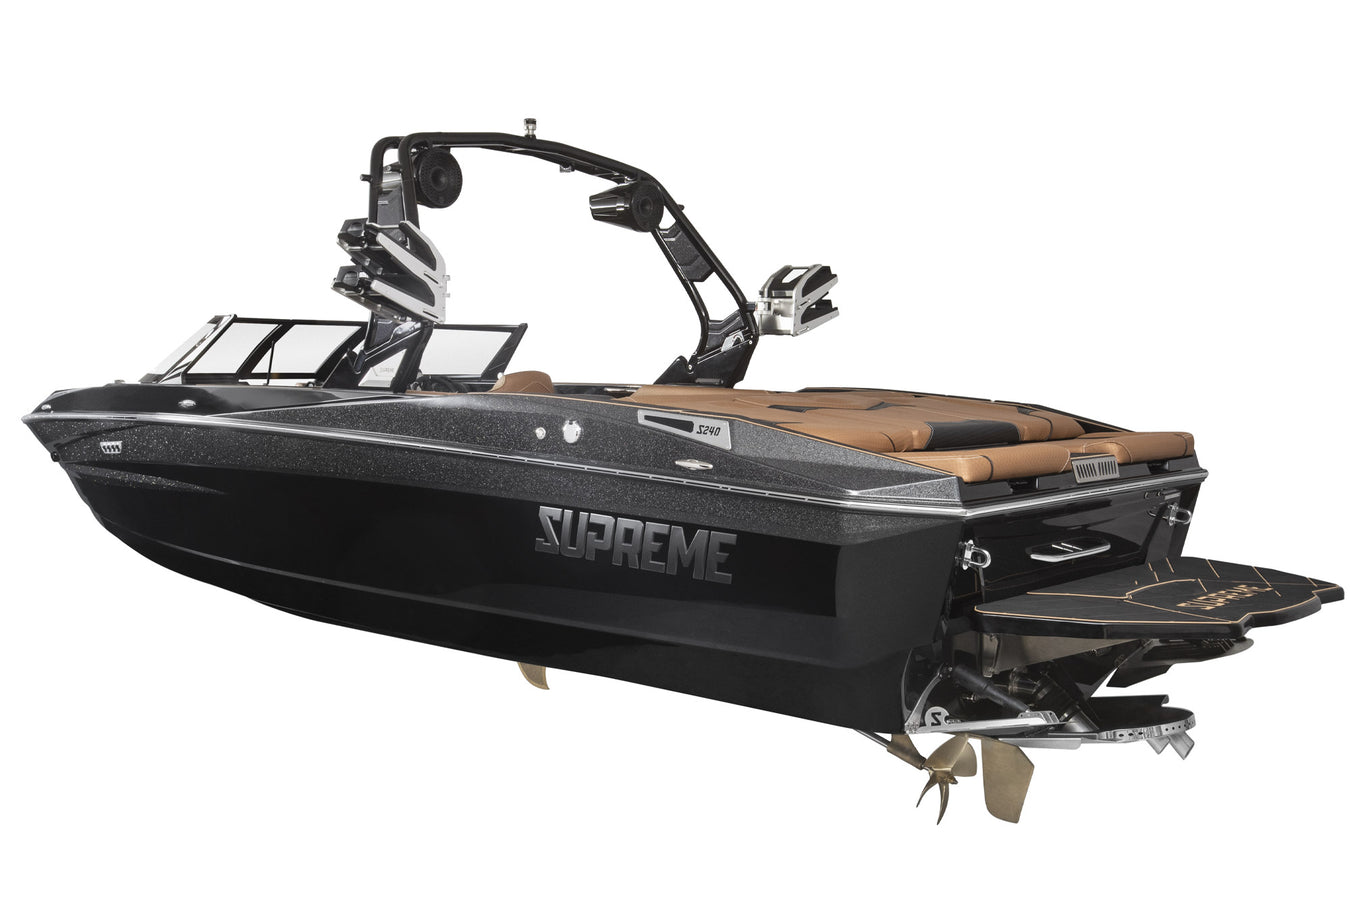  Supreme S240 wakeboard-wakesurf boat rental at Lake Powell